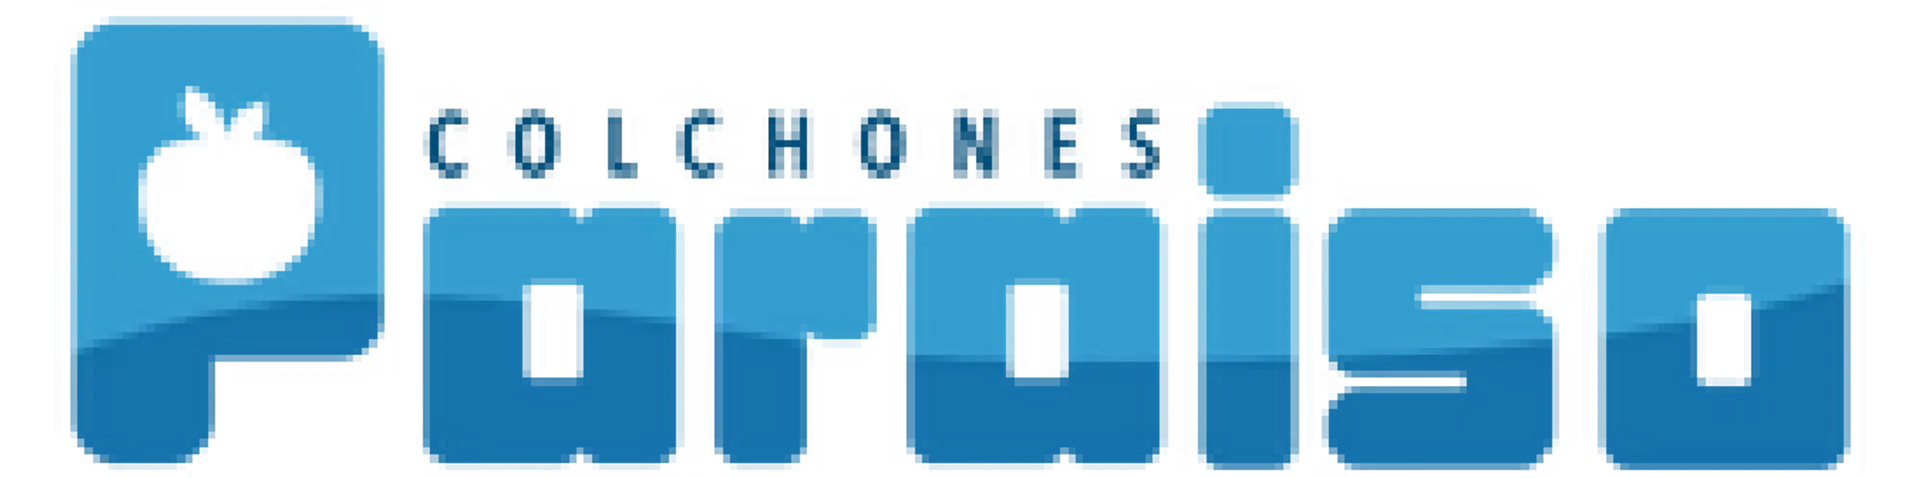 COLCHONES PARAISO logo